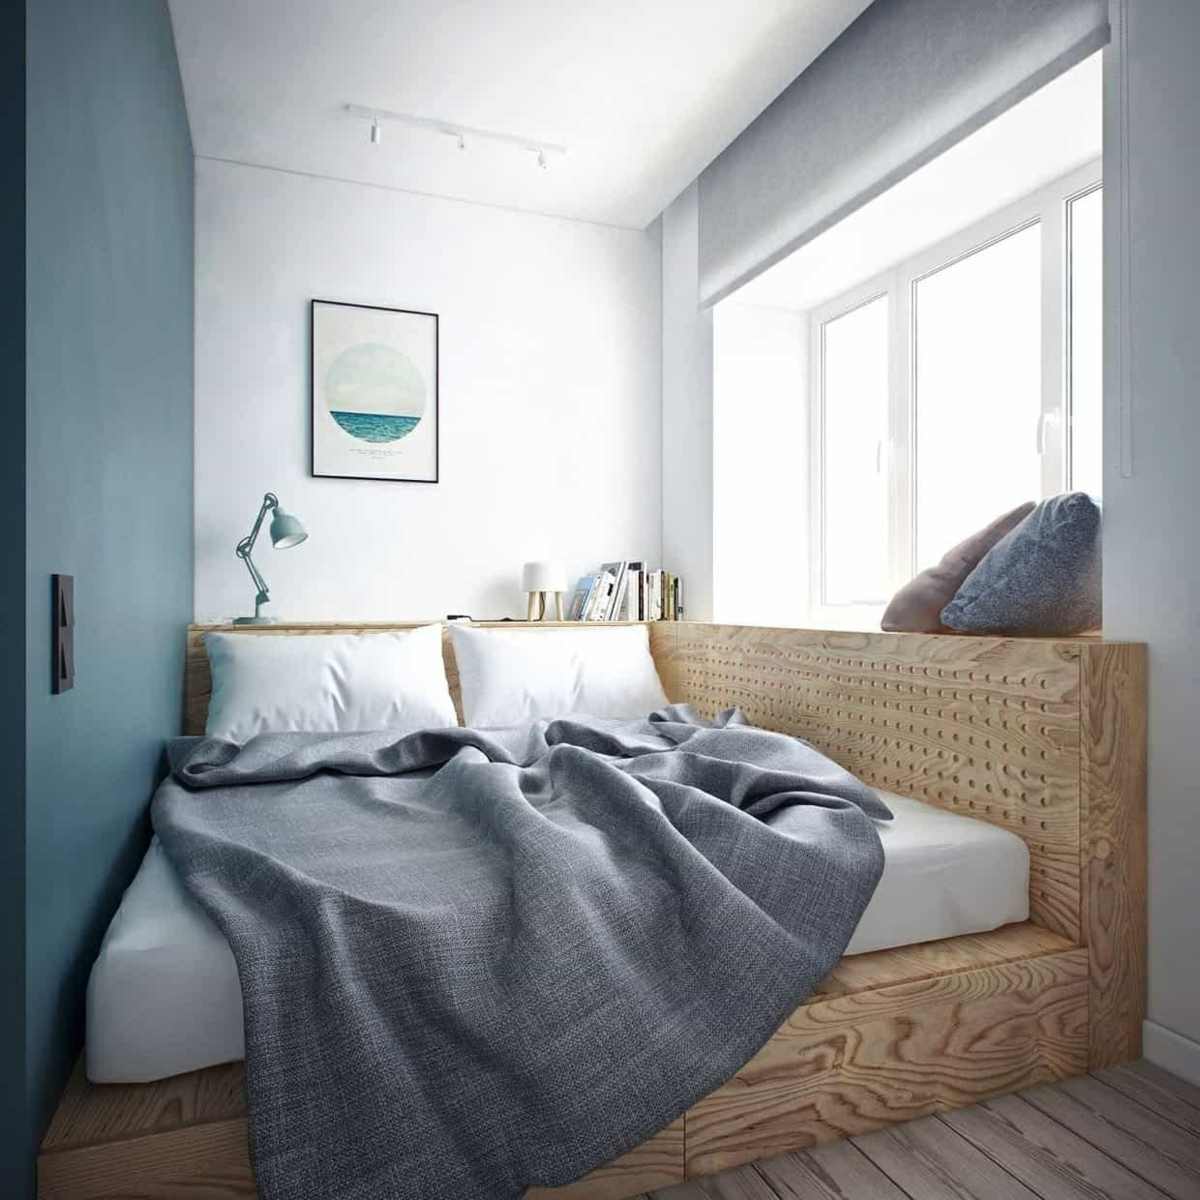 Podest als Schlafbereich bauen und als Stauraum nutzen im kleinen Schlafzimmer